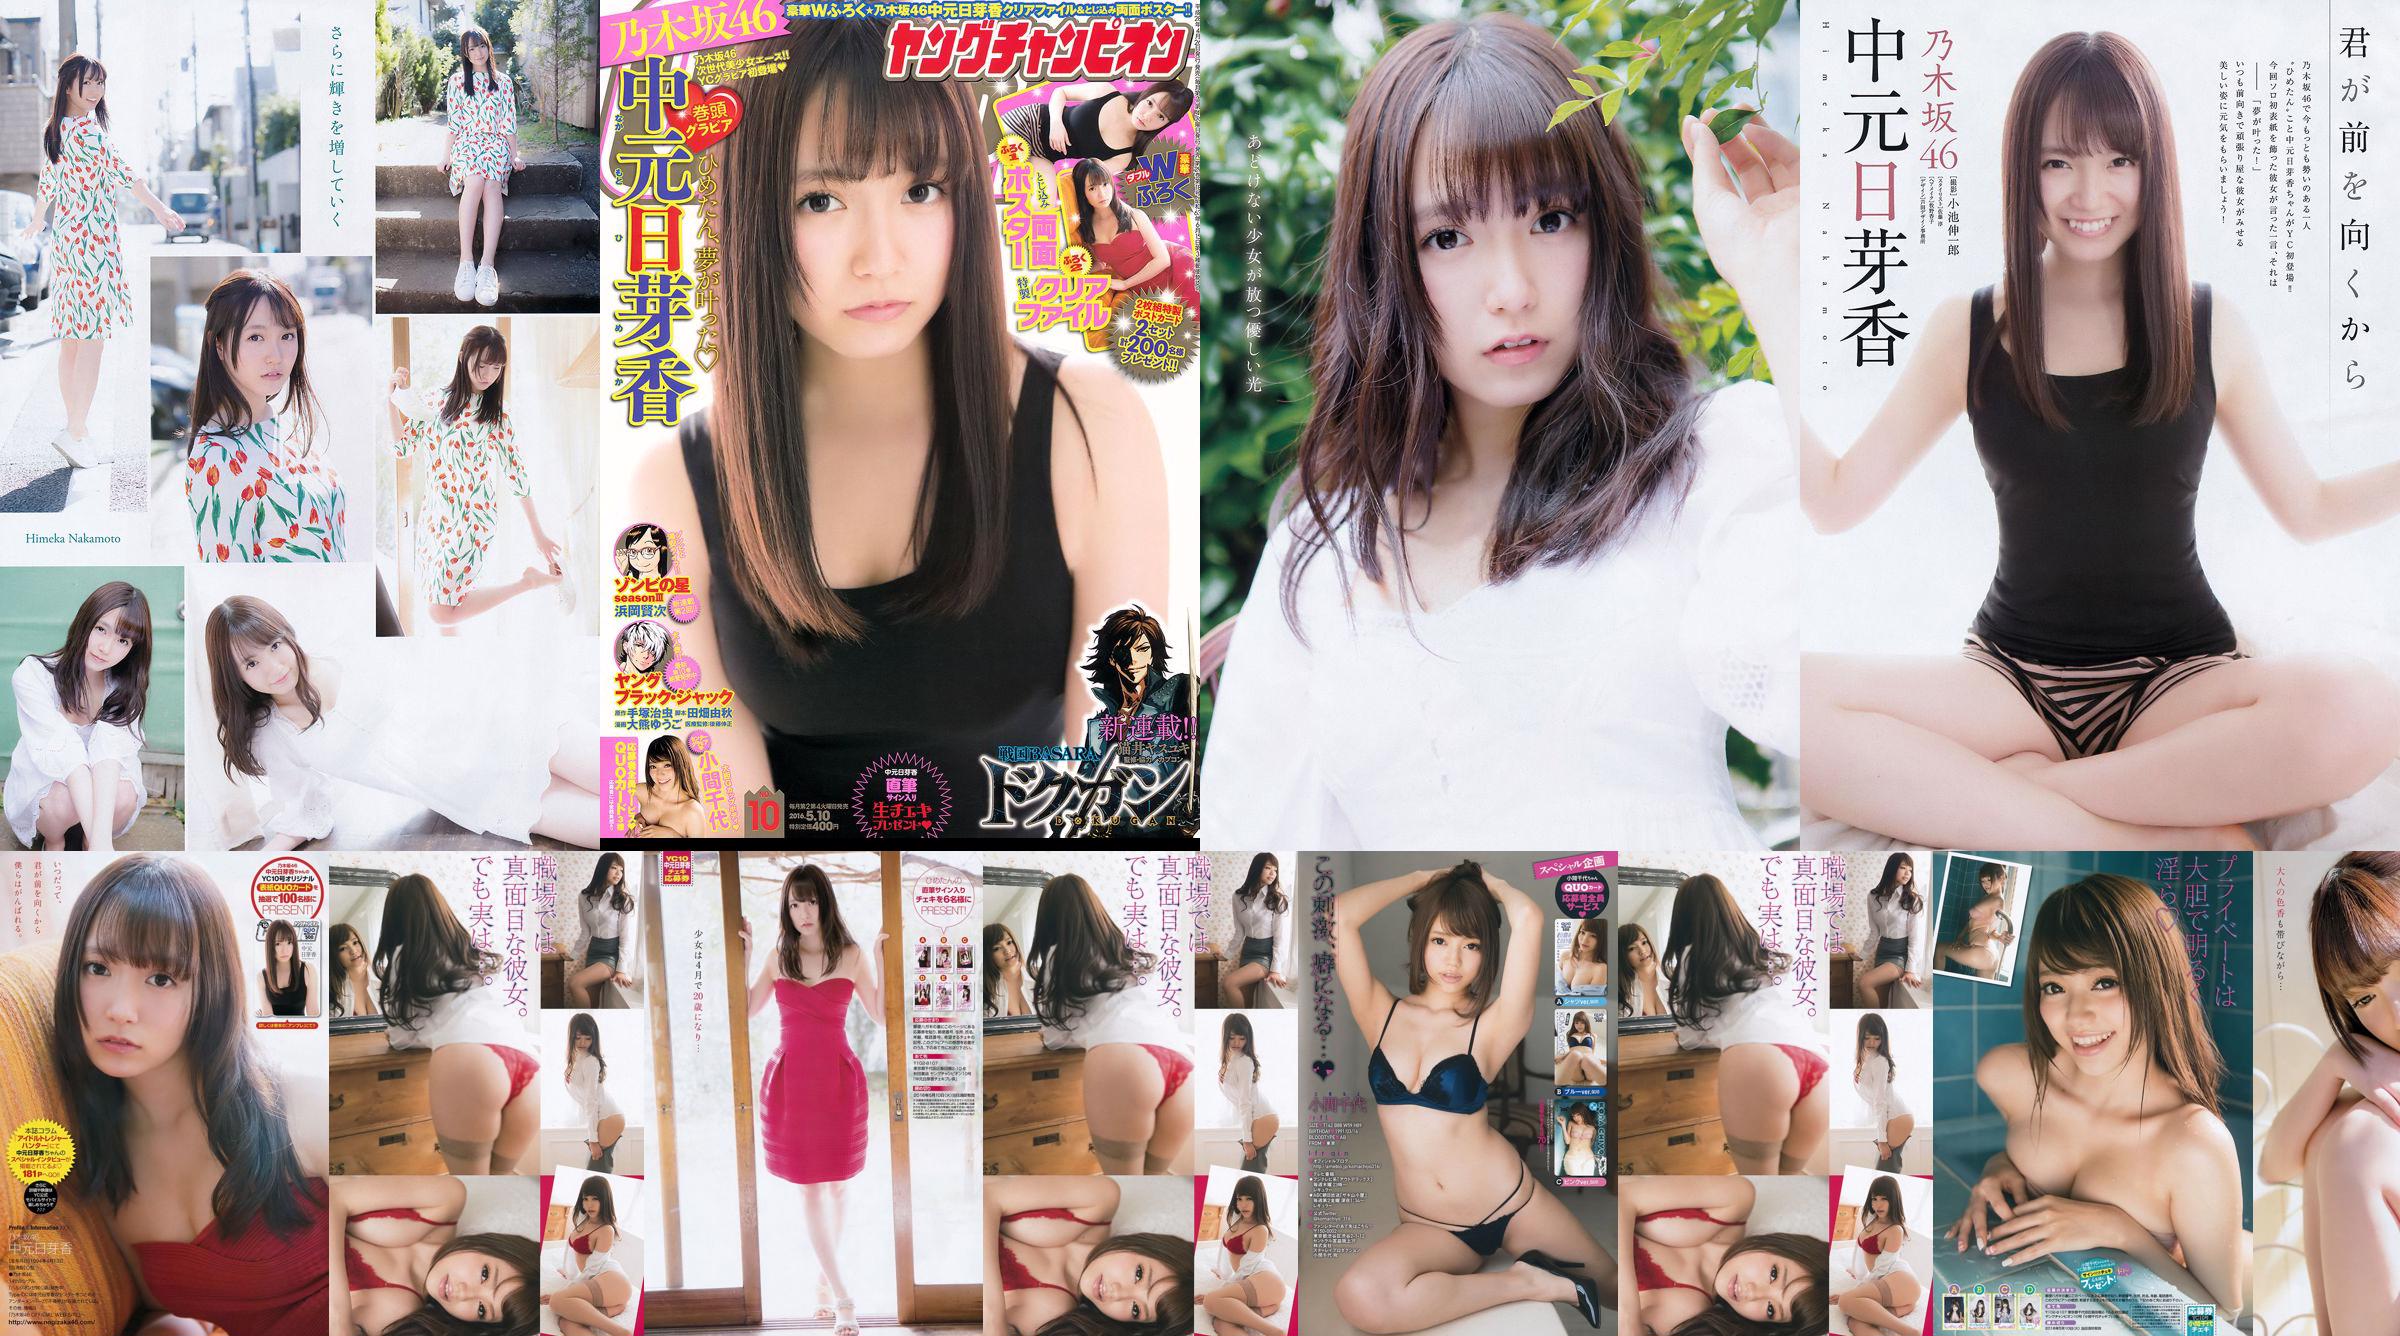 [Jonge kampioen] Nakamoto Nichiko Koma Chiyo 2016 No.10 Photo Magazine No.114d1c Pagina 1